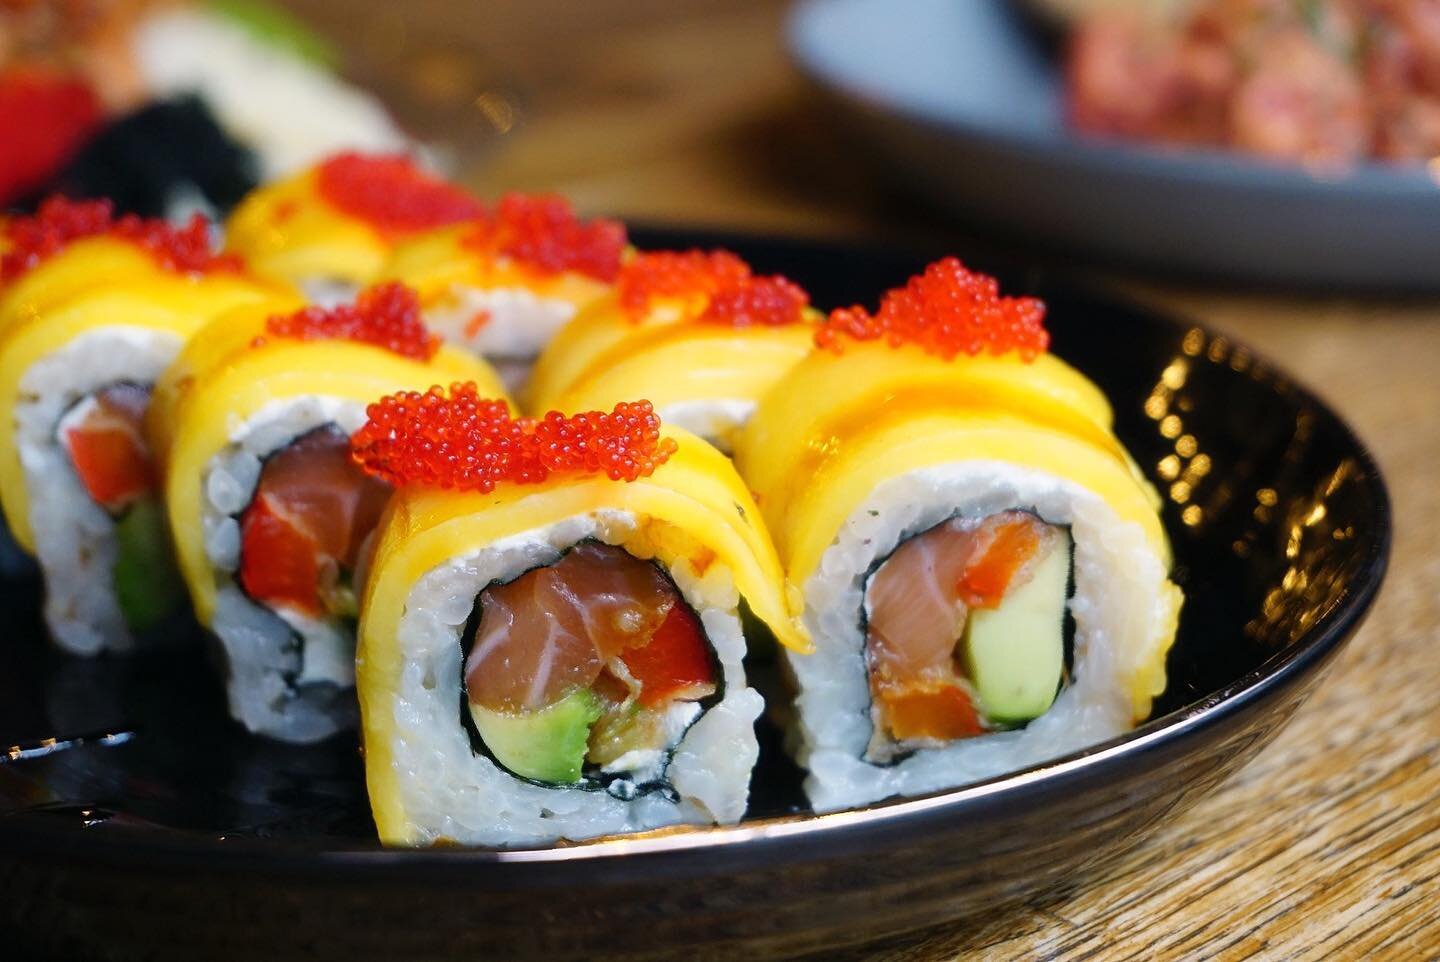 S P R I N G T I M E &bull; Sushi ist ein Lifestyle. Ein Lifestyle mit guten Vibes und endlosen M&ouml;glichkeiten. Passend zum Wetter bieten wir z.B die Tropicana Roll an. Ummantelt mit s&uuml;sser Mango spiegelt sie die gute Stimmung wieder, die wir